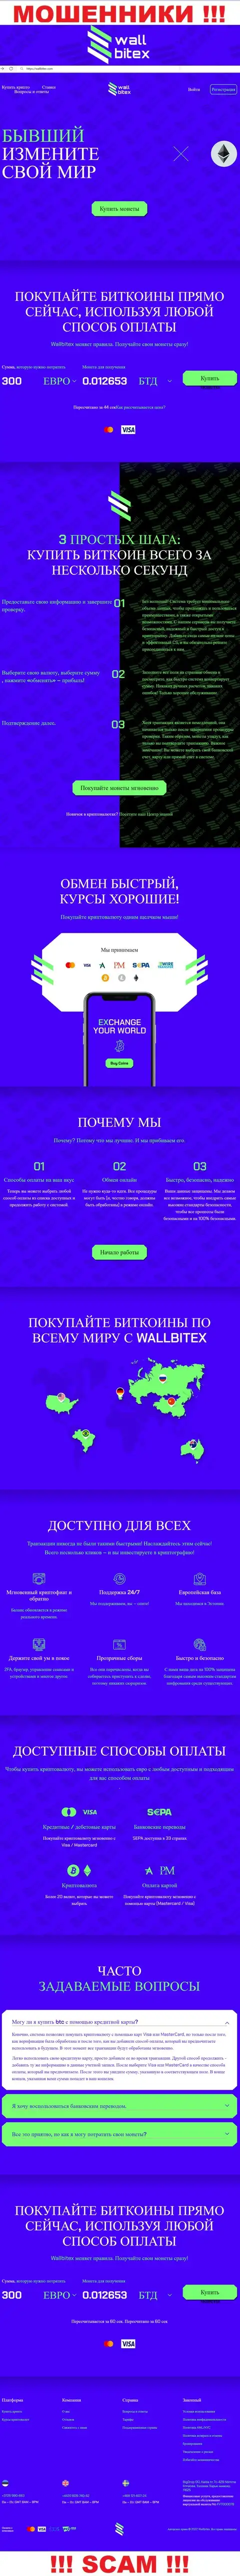 WallBitex Com - это официальный сервис жульнической конторы Валл Битекс